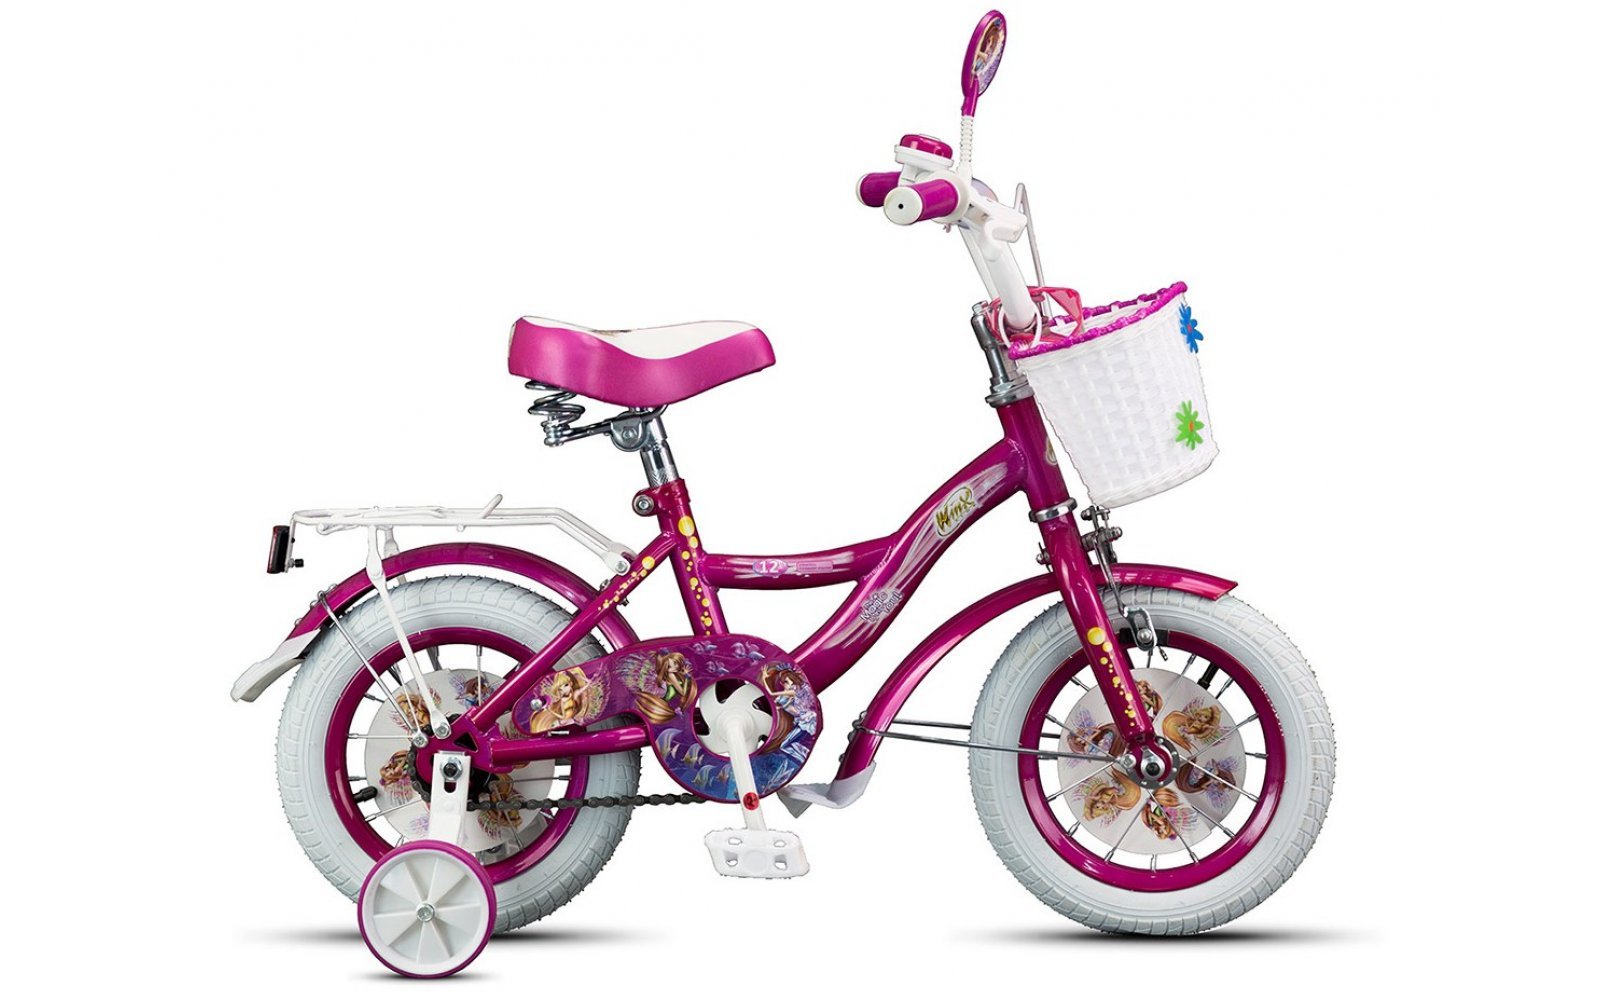 Купить детский велосипед в ростове на дону. Детский велосипед MAXXPRO 12. Велосипед МАКСПРО розовый. Велосипед MAXXPRO розовый розовый детский. Велосипед MAXXPRO 14 розовый.